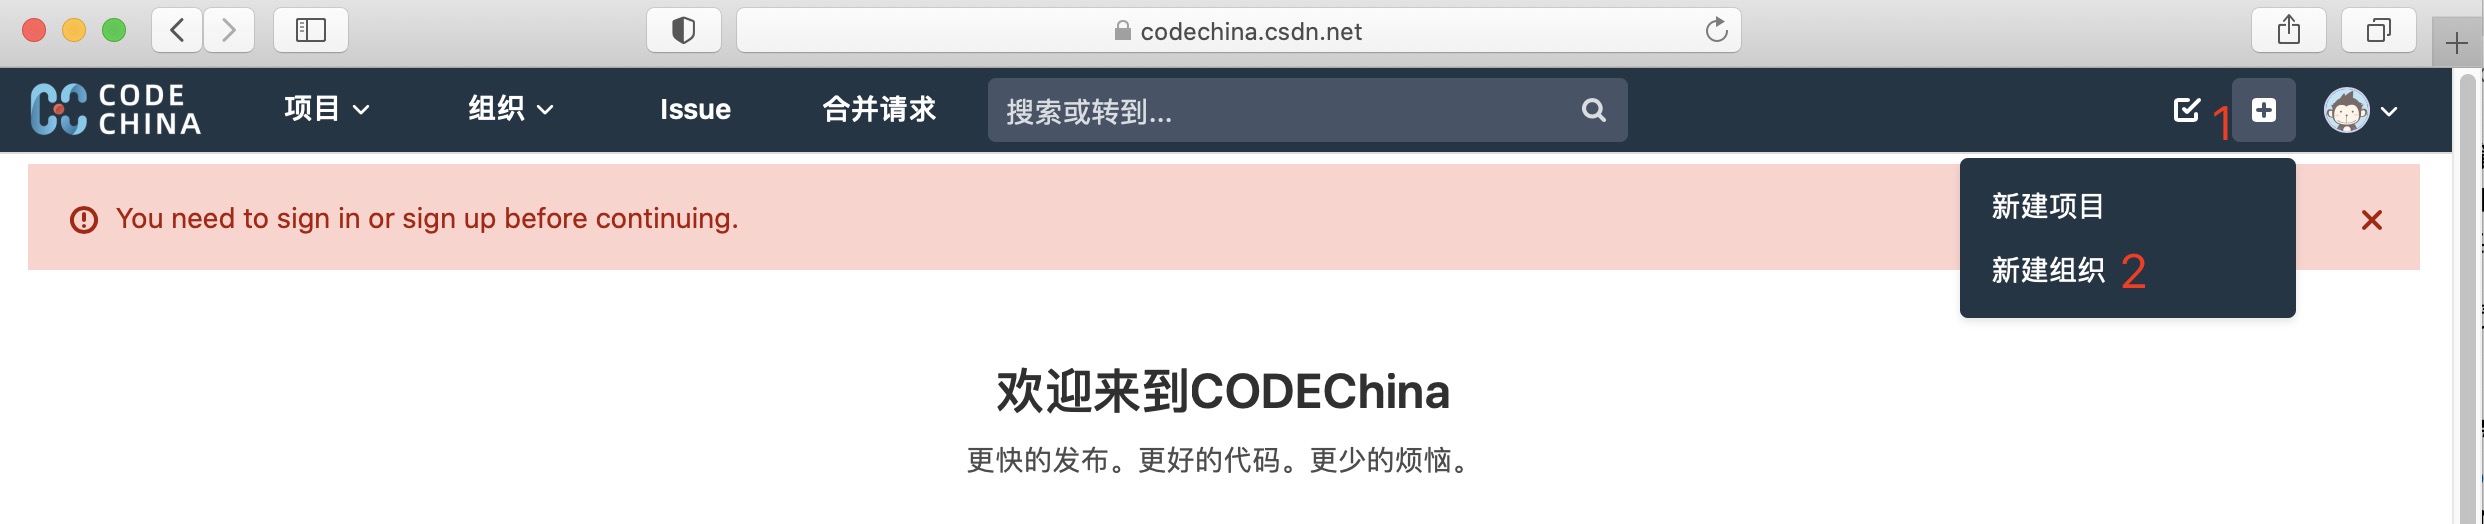 docs/img/code-china-4.png